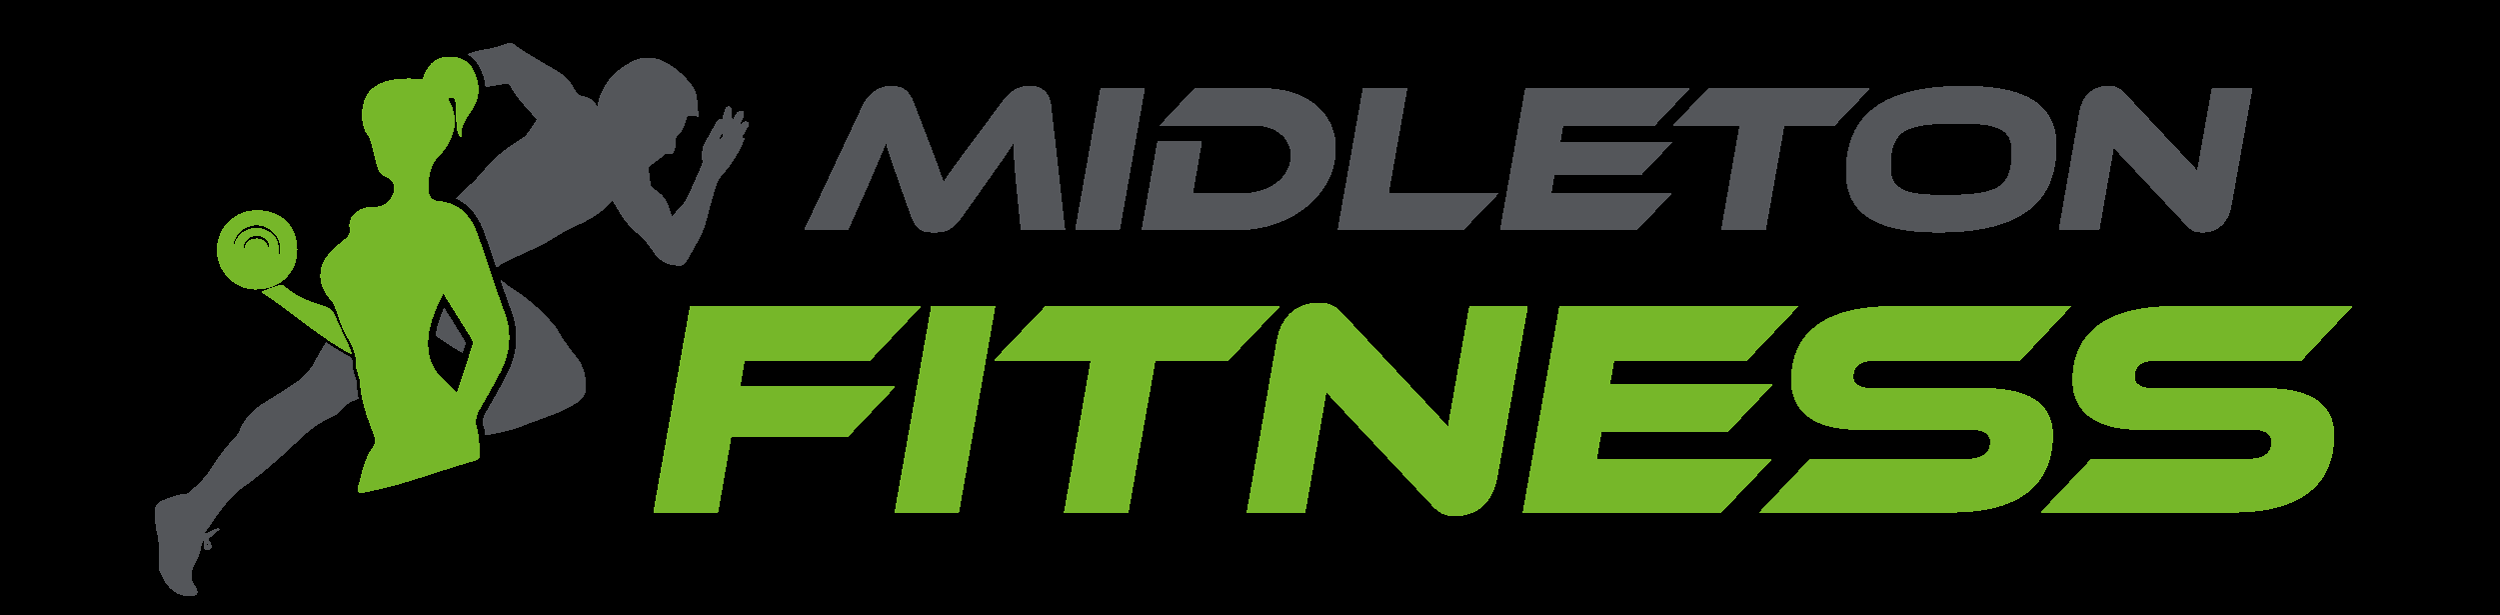 Logo for Midleton fitness